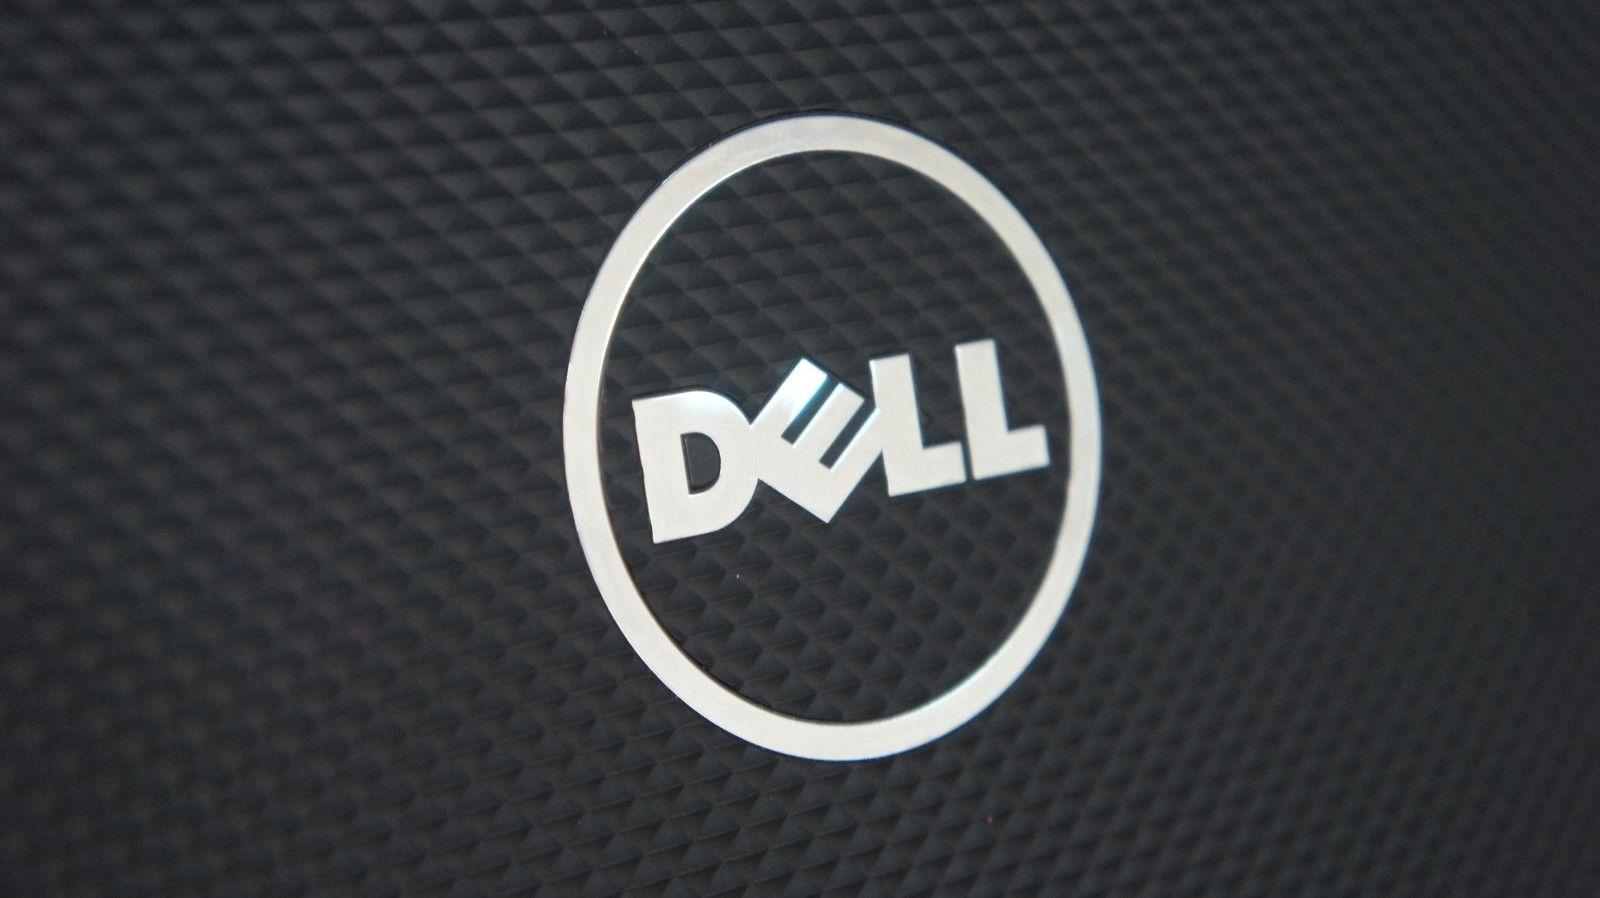 EMC Corporation Logo - Dell to acquire EMC Corporation in massive $67 billion deal